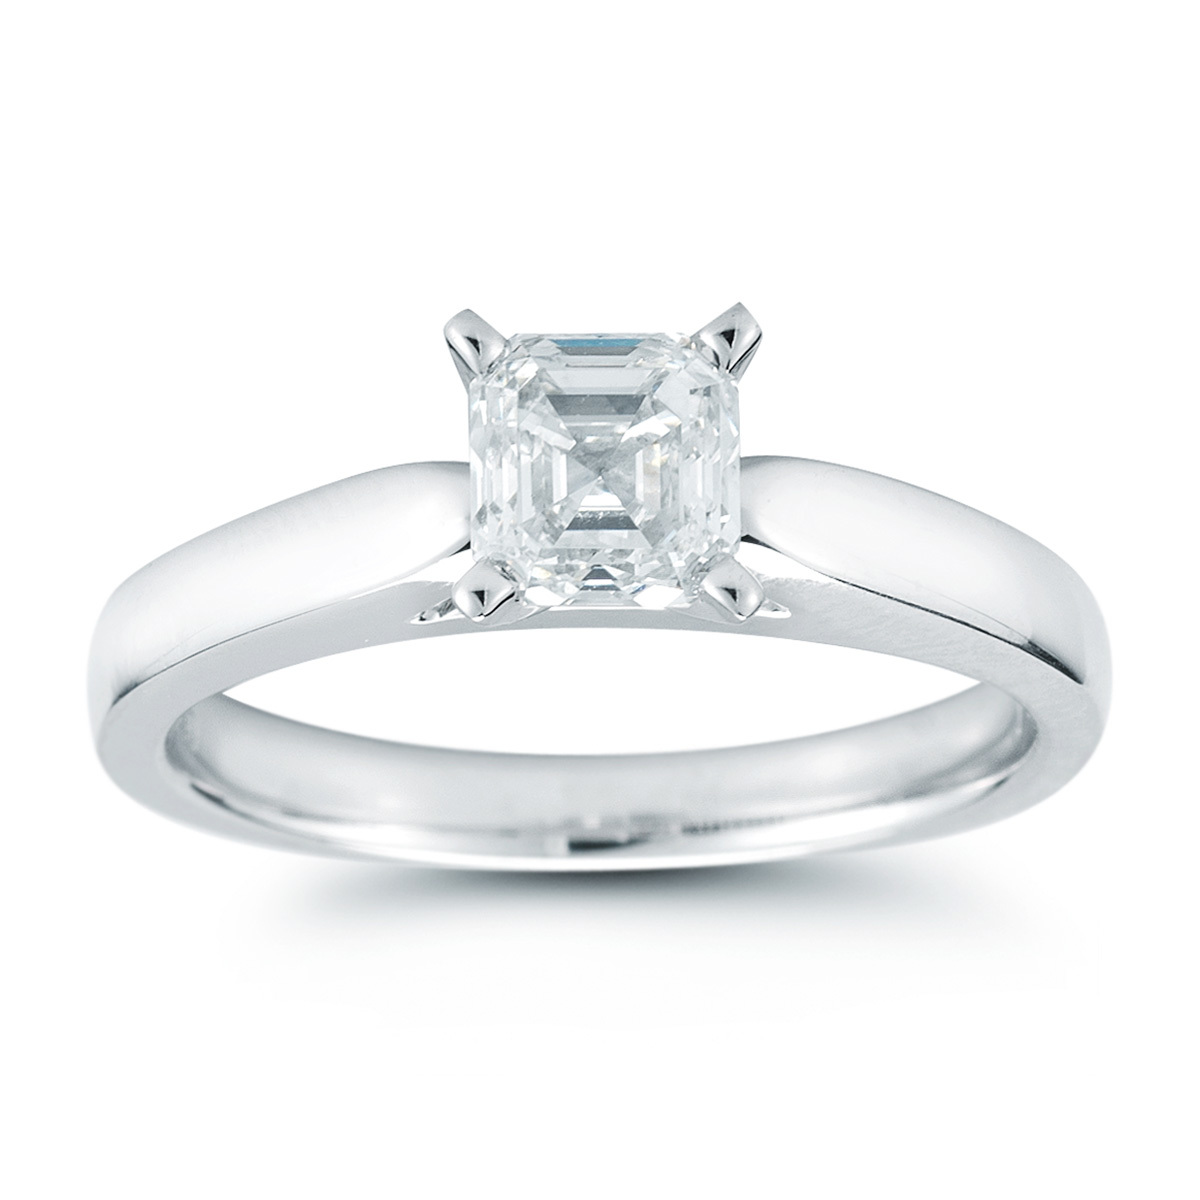 1.0ct Asscher Cut Diamond Solitaire Ring, Platinum